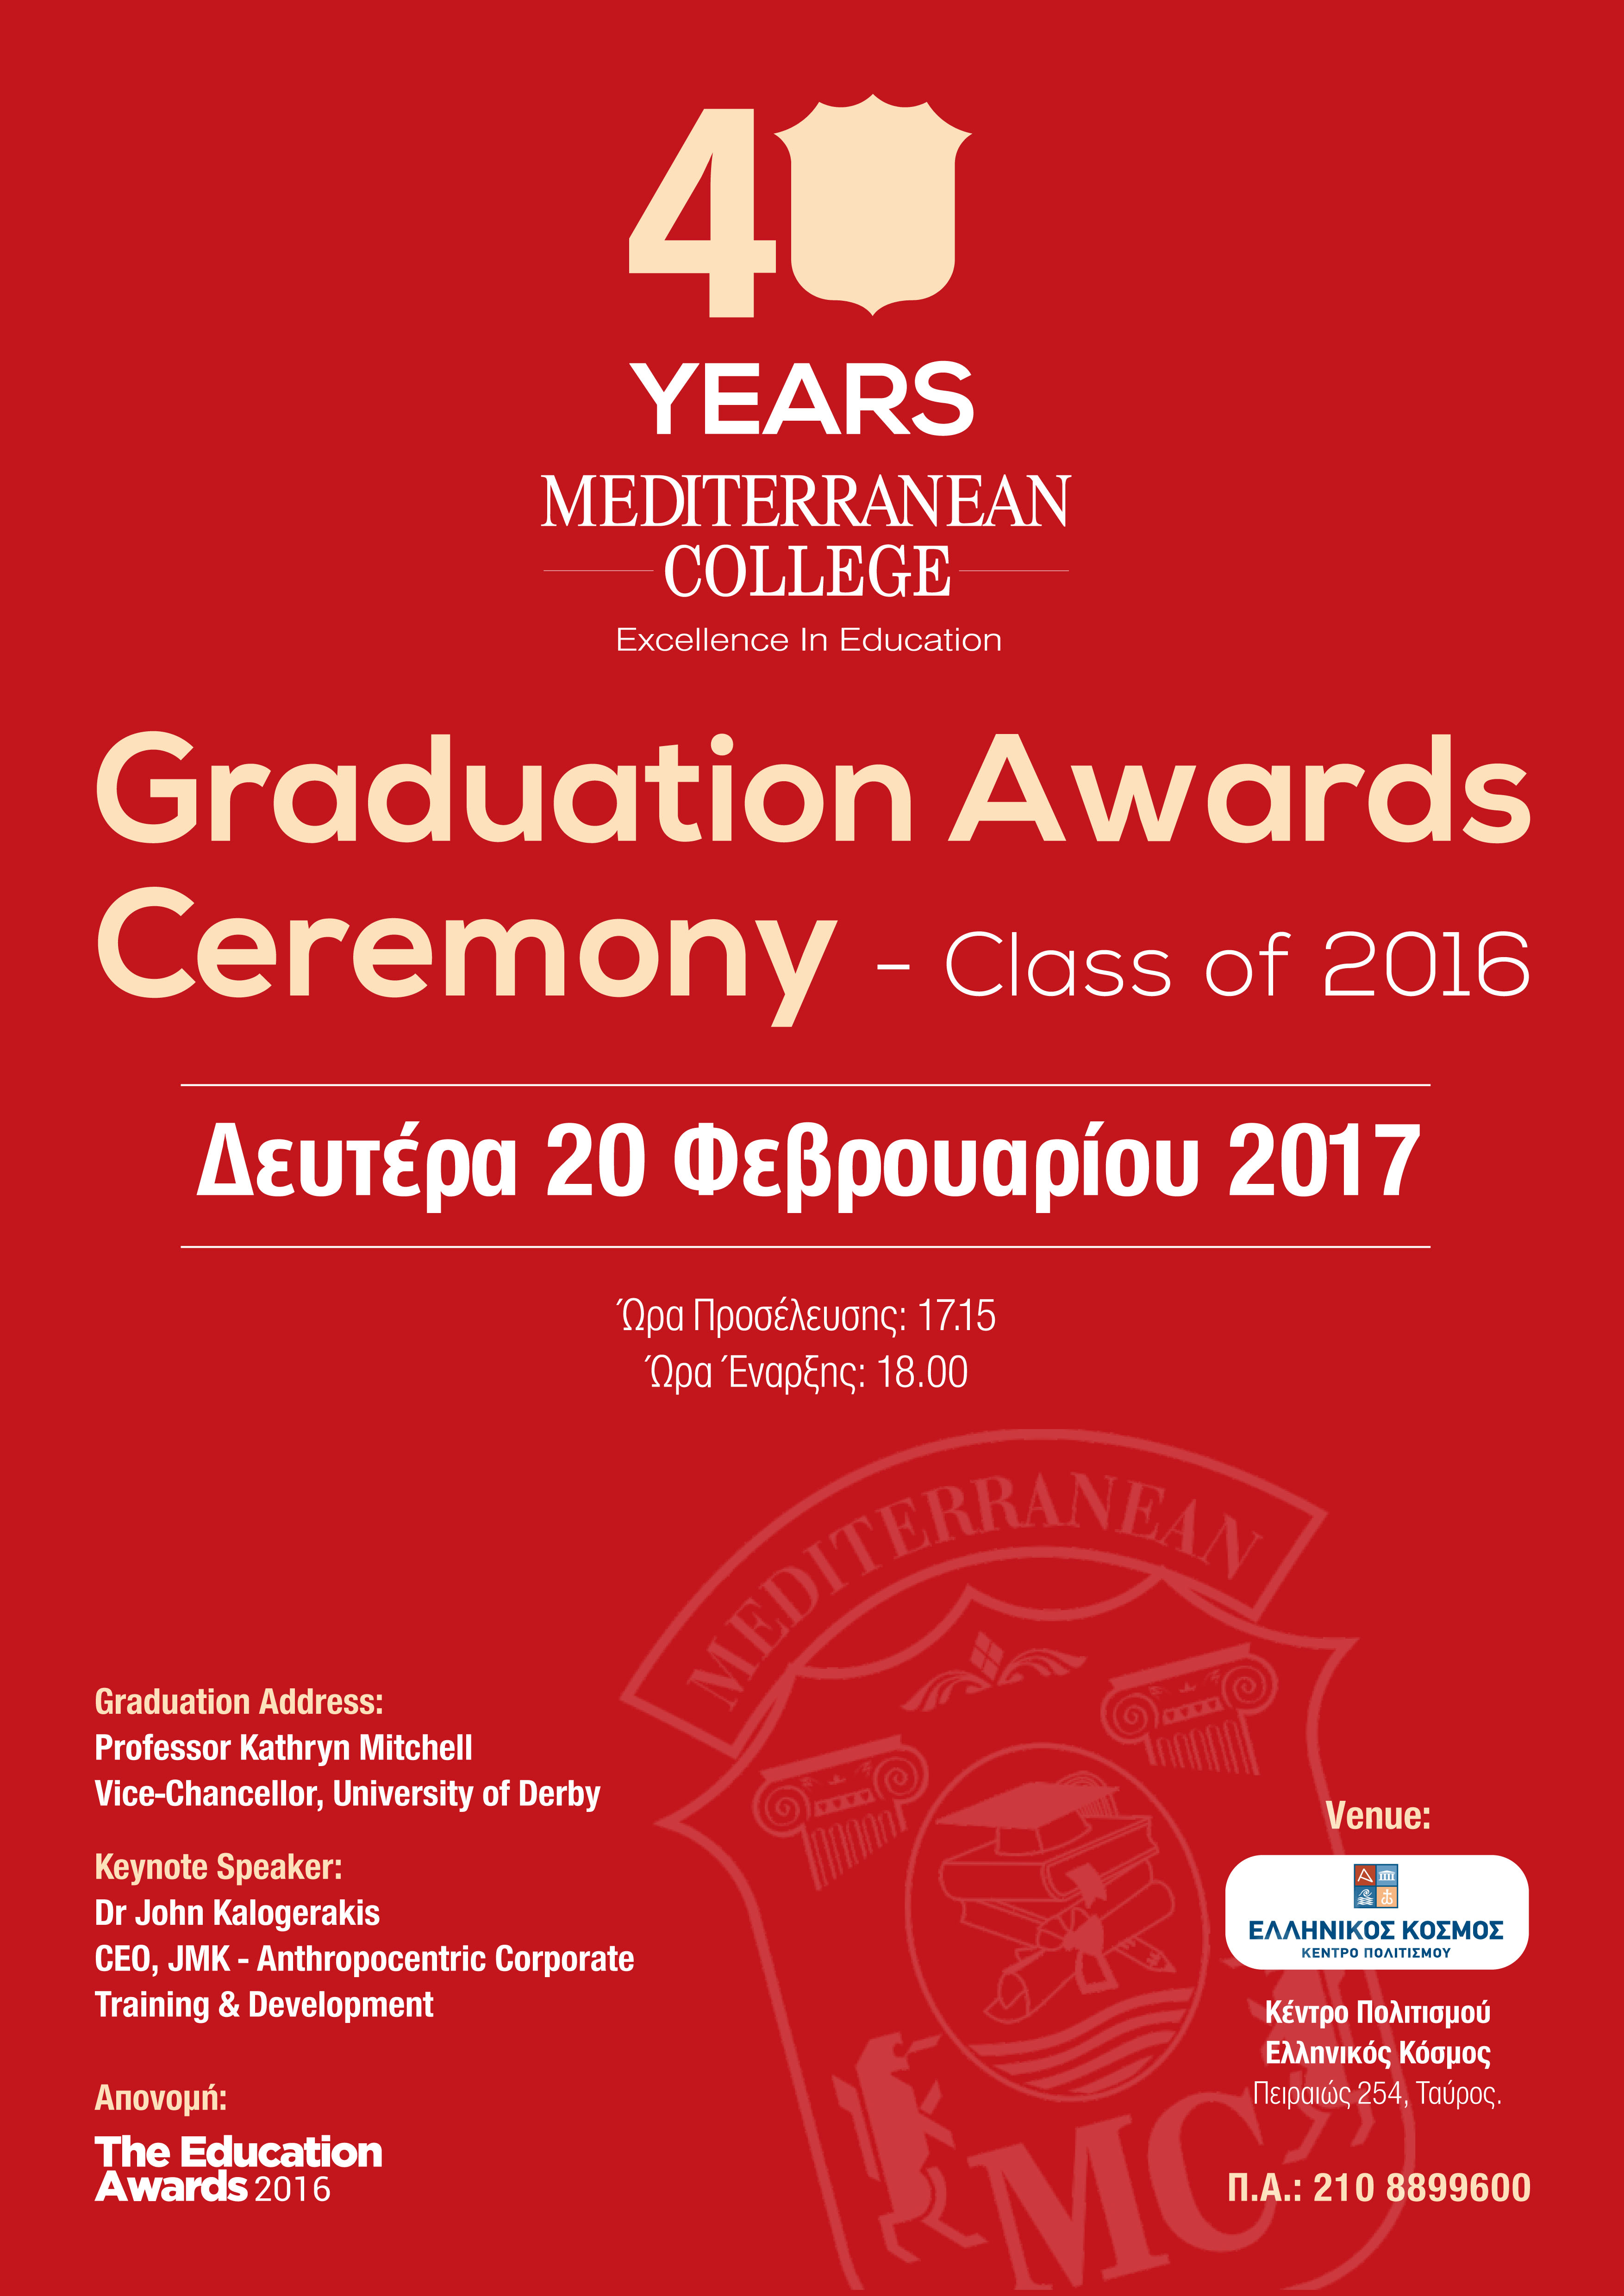 A3-graduation ceremony